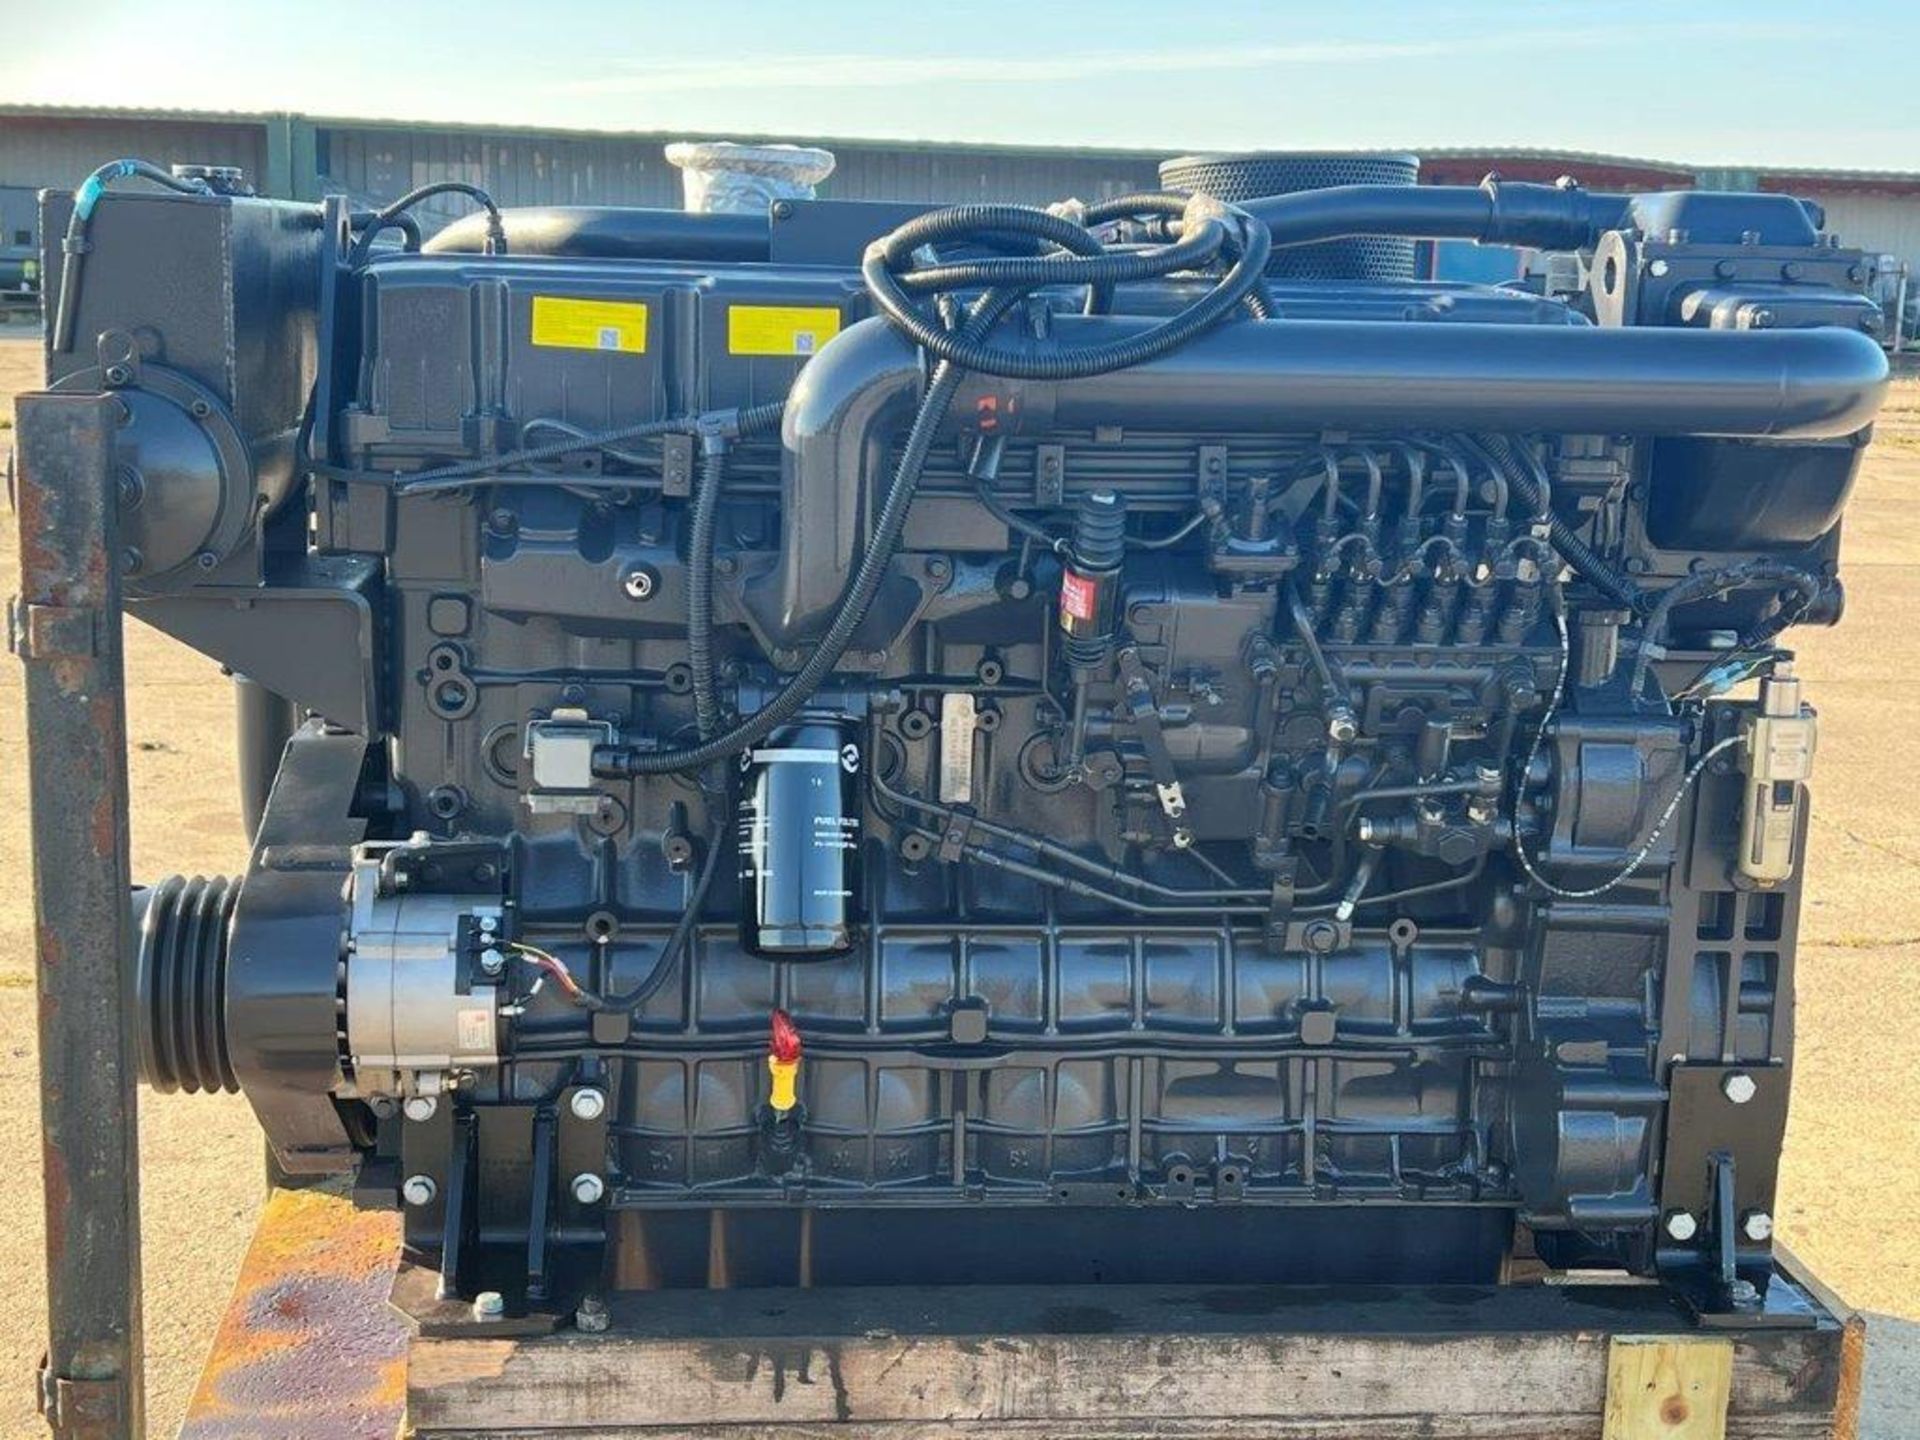 Kelvin SC12E460 Marine Diesel Engine Unused